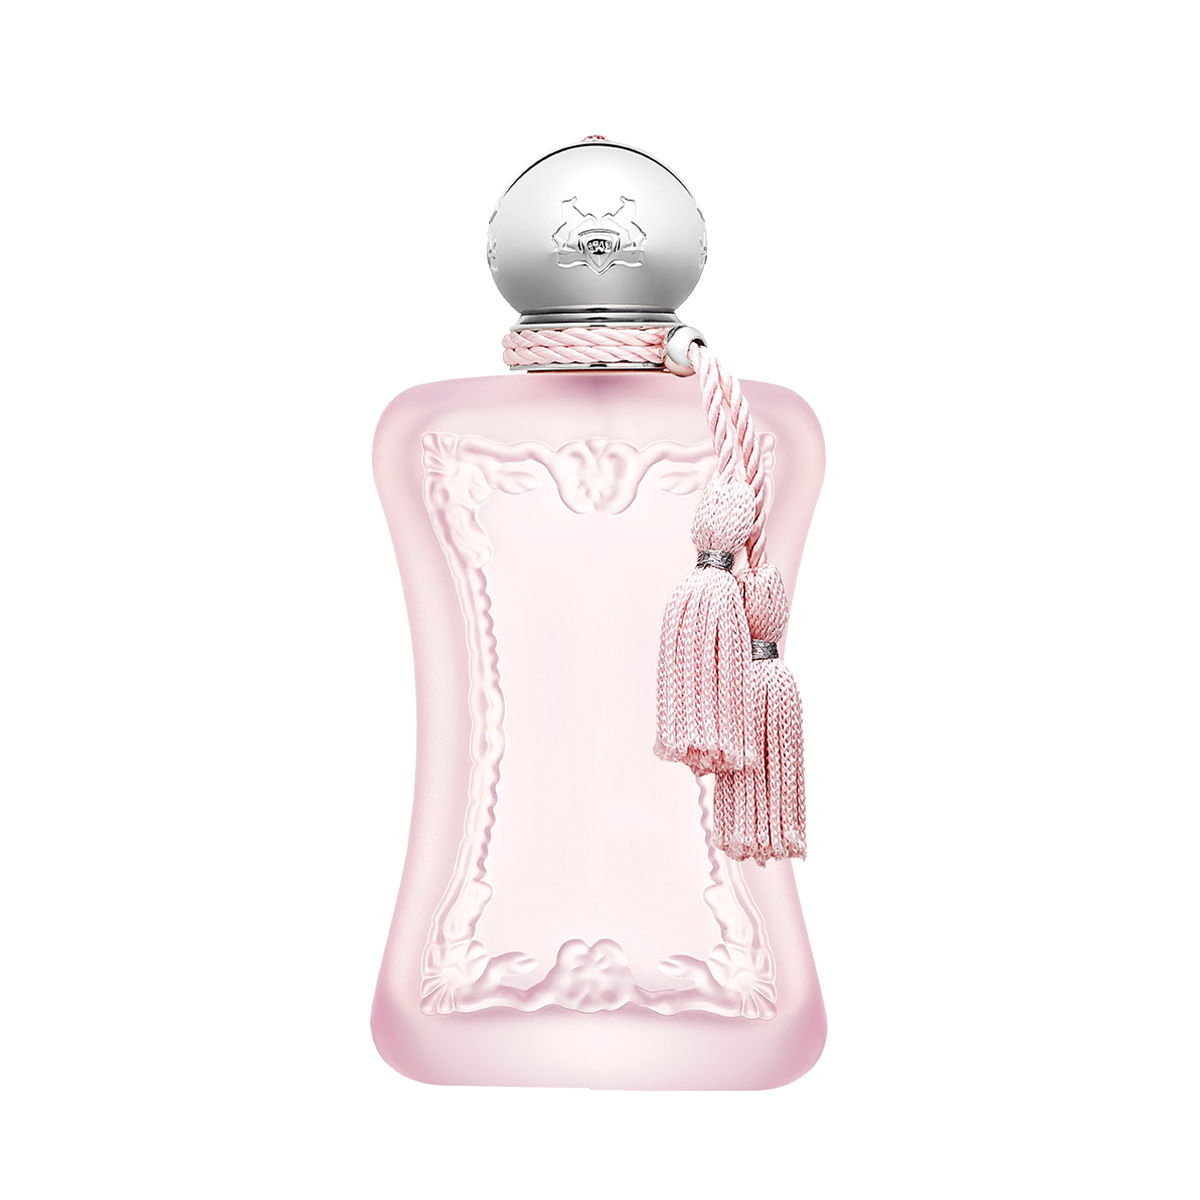 Delina <br> Eau de Parfum 75ml